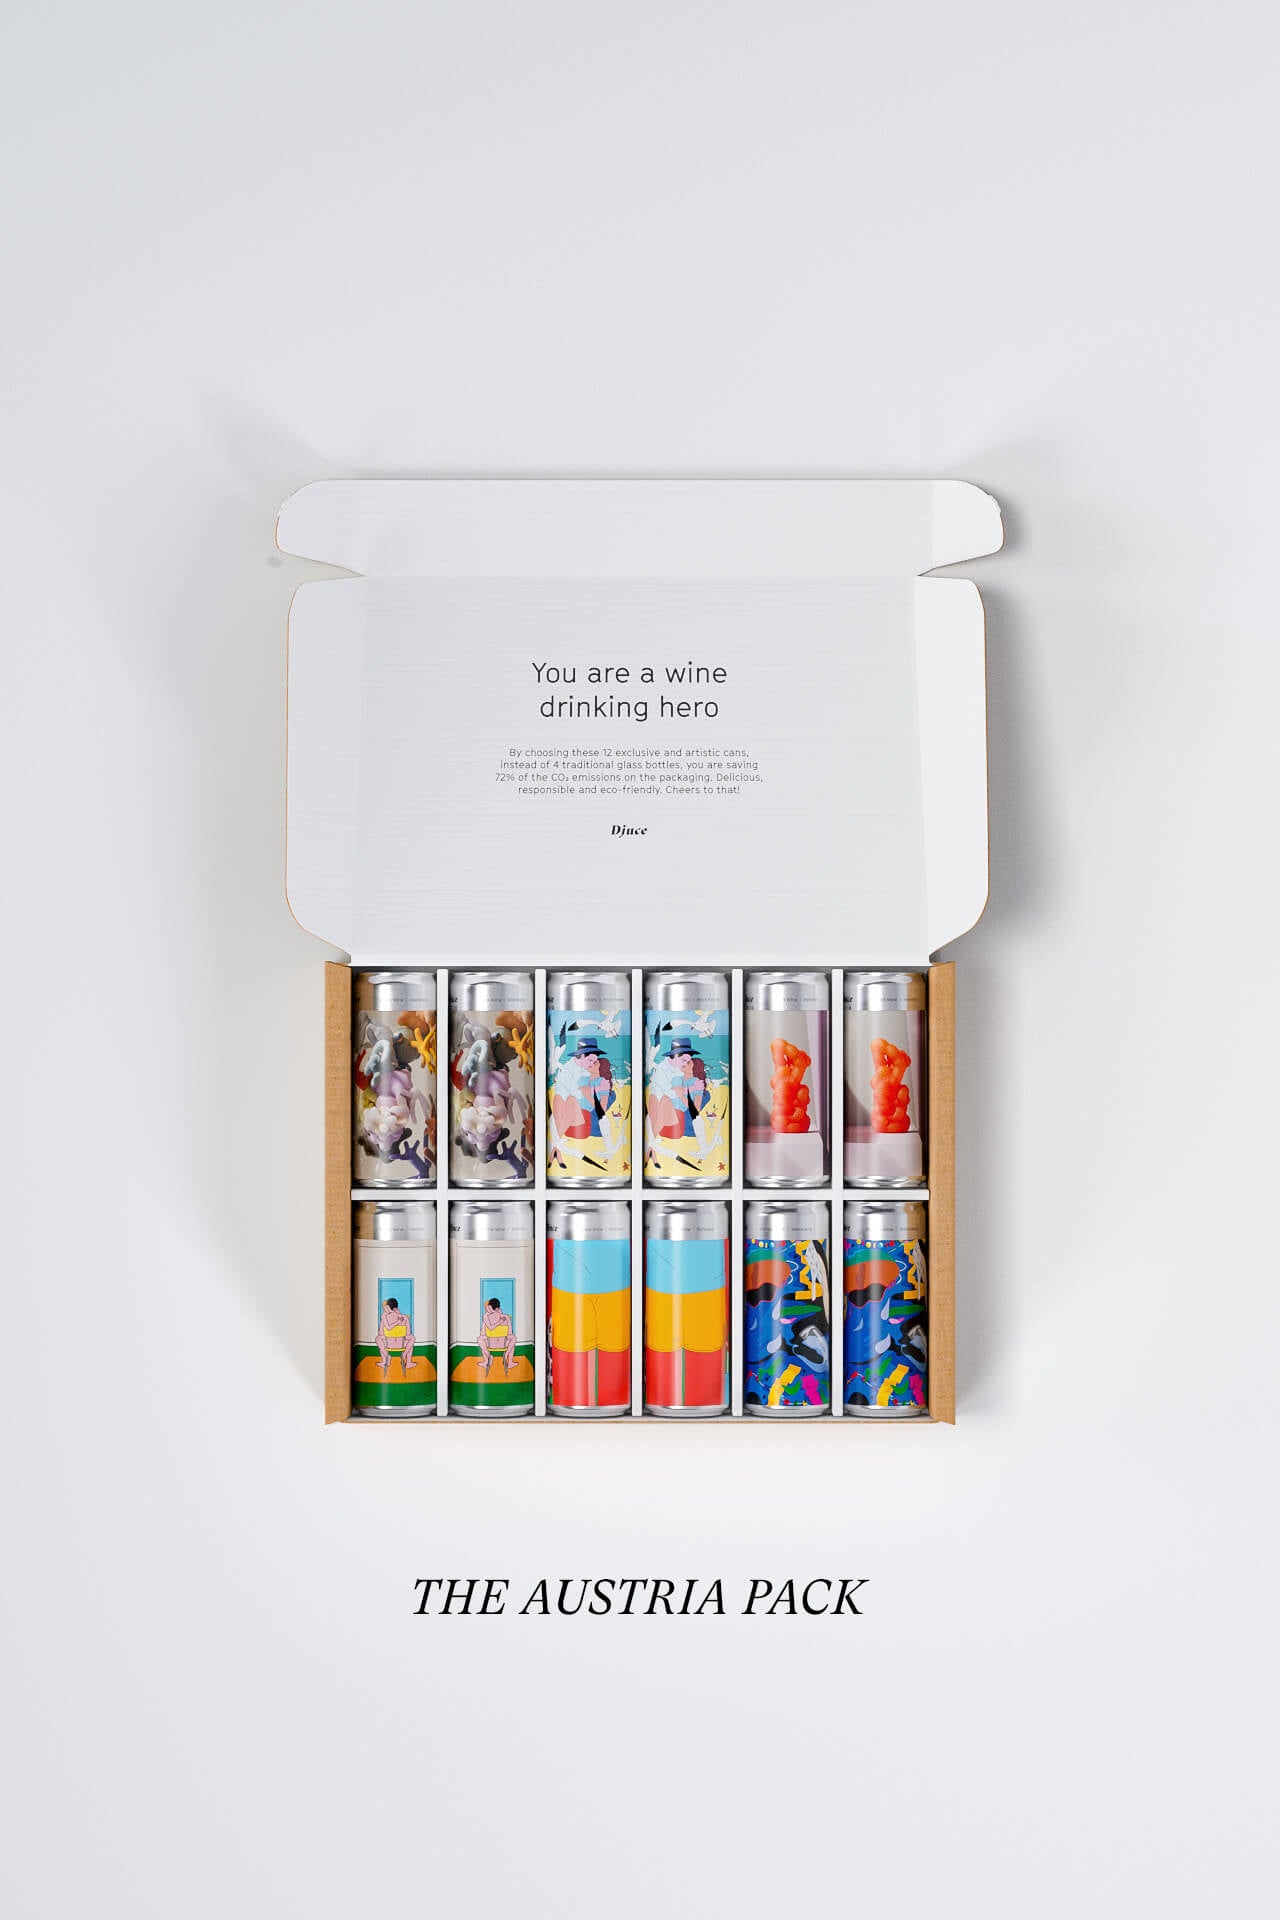 The Austria Pack